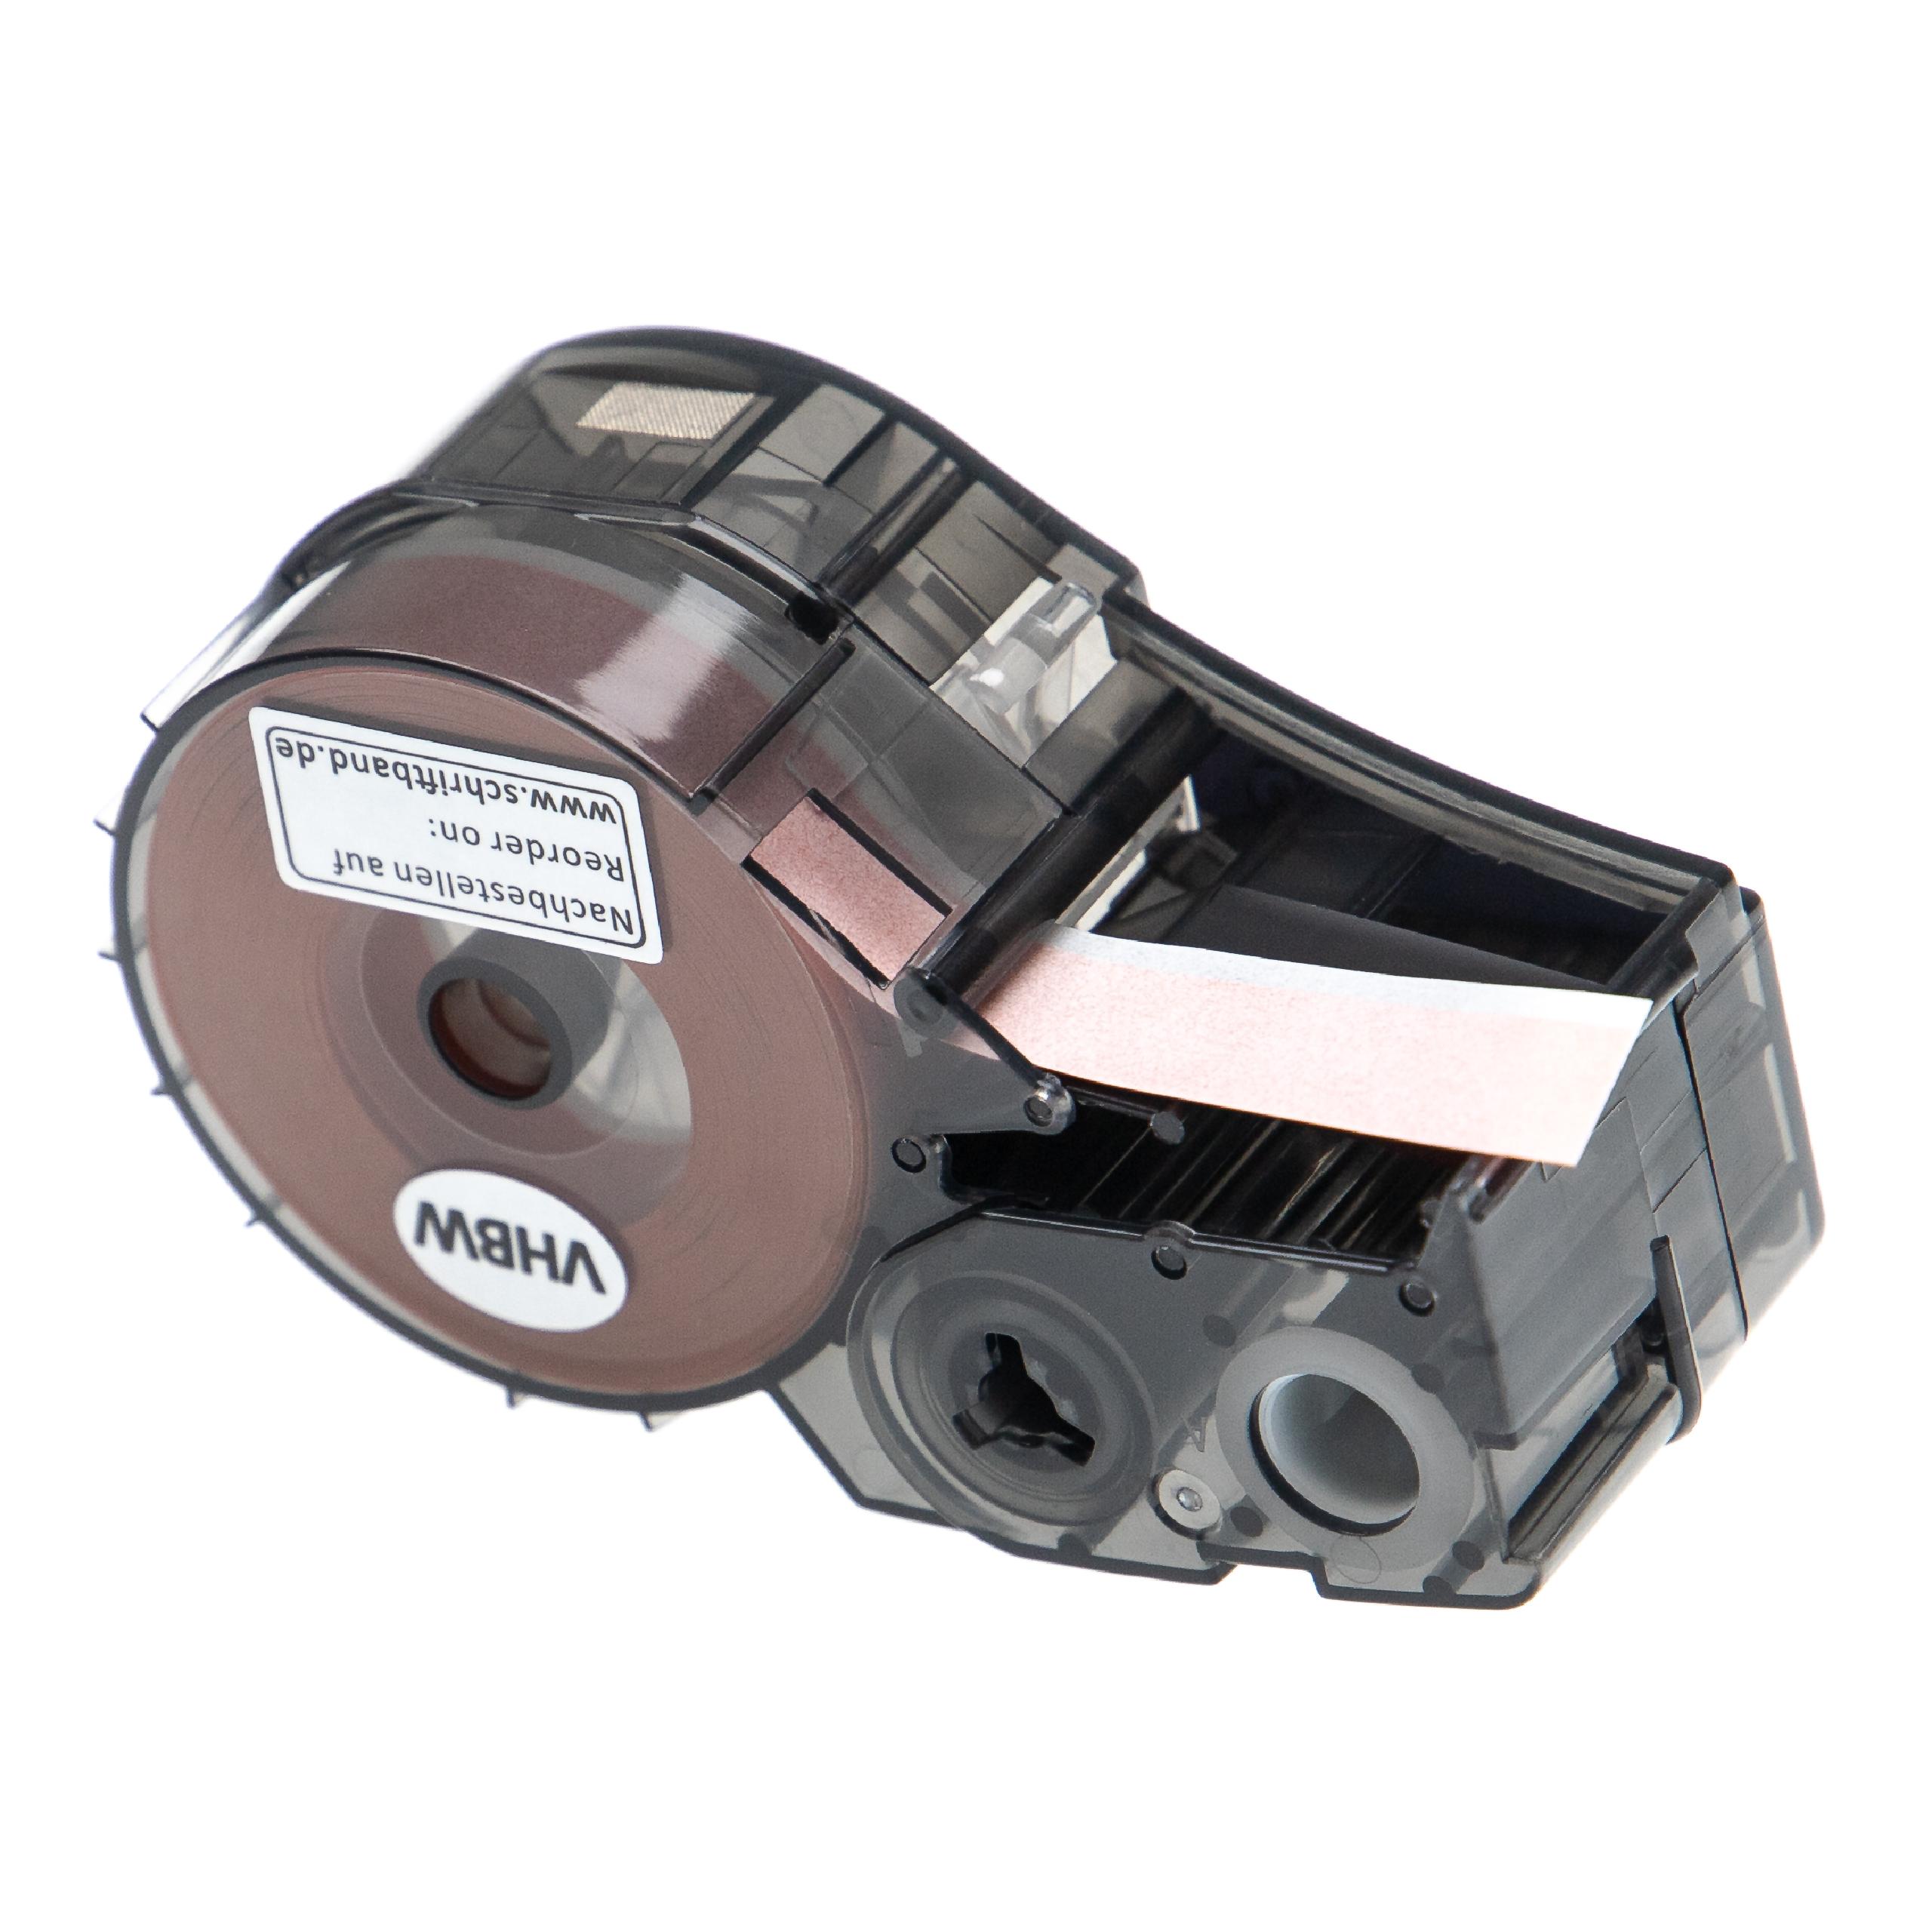 Cassetta nastro sostituisce Brady M21-375-595-OR per etichettatrice Brady 9,35mm nero su arancione, vinile